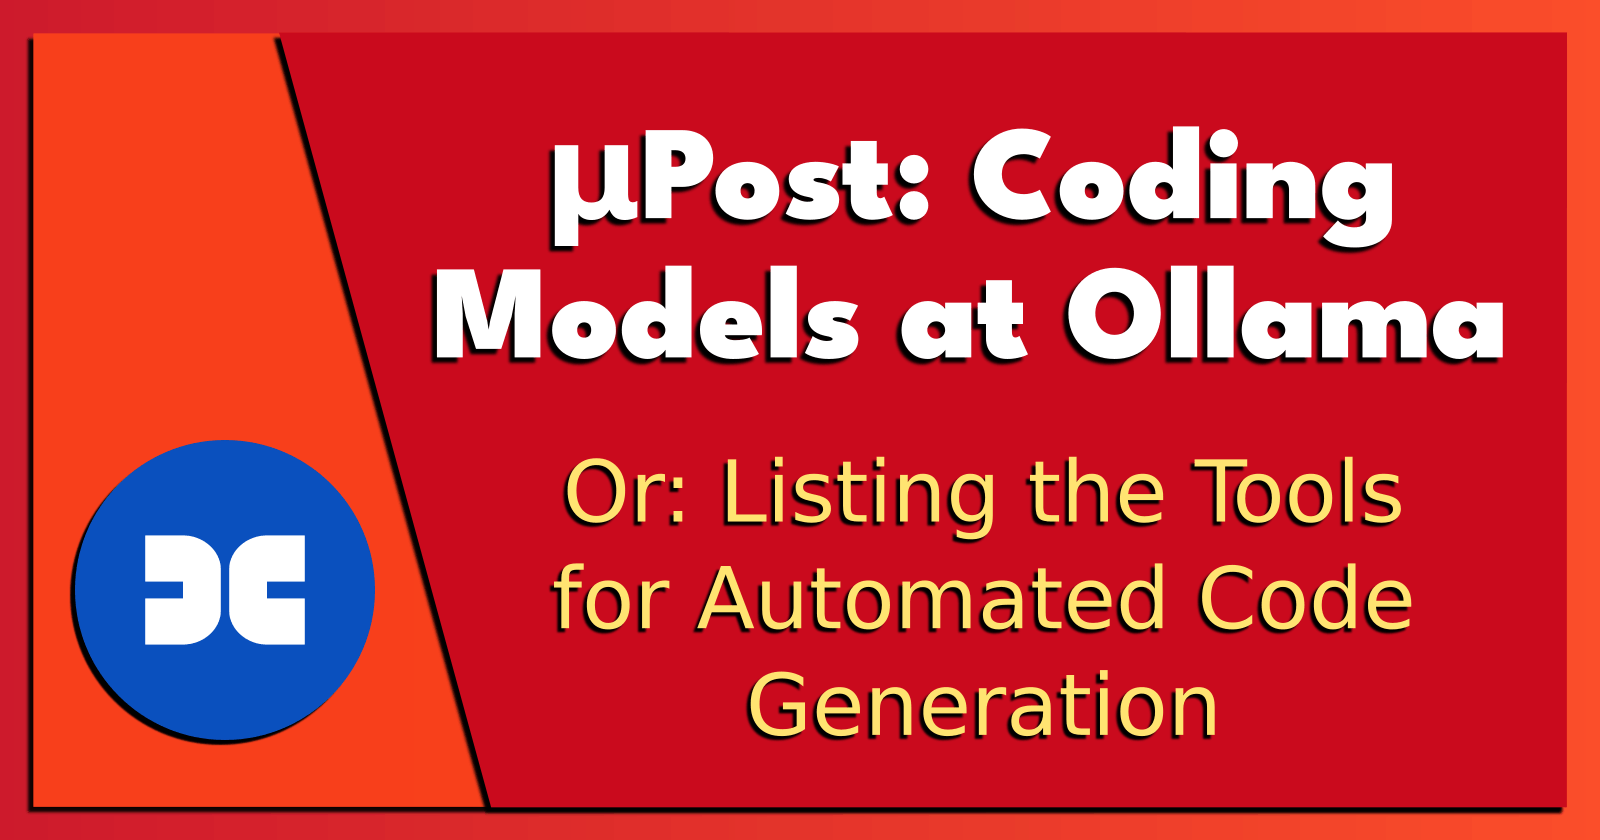 microPost: Coding Models at Ollama.